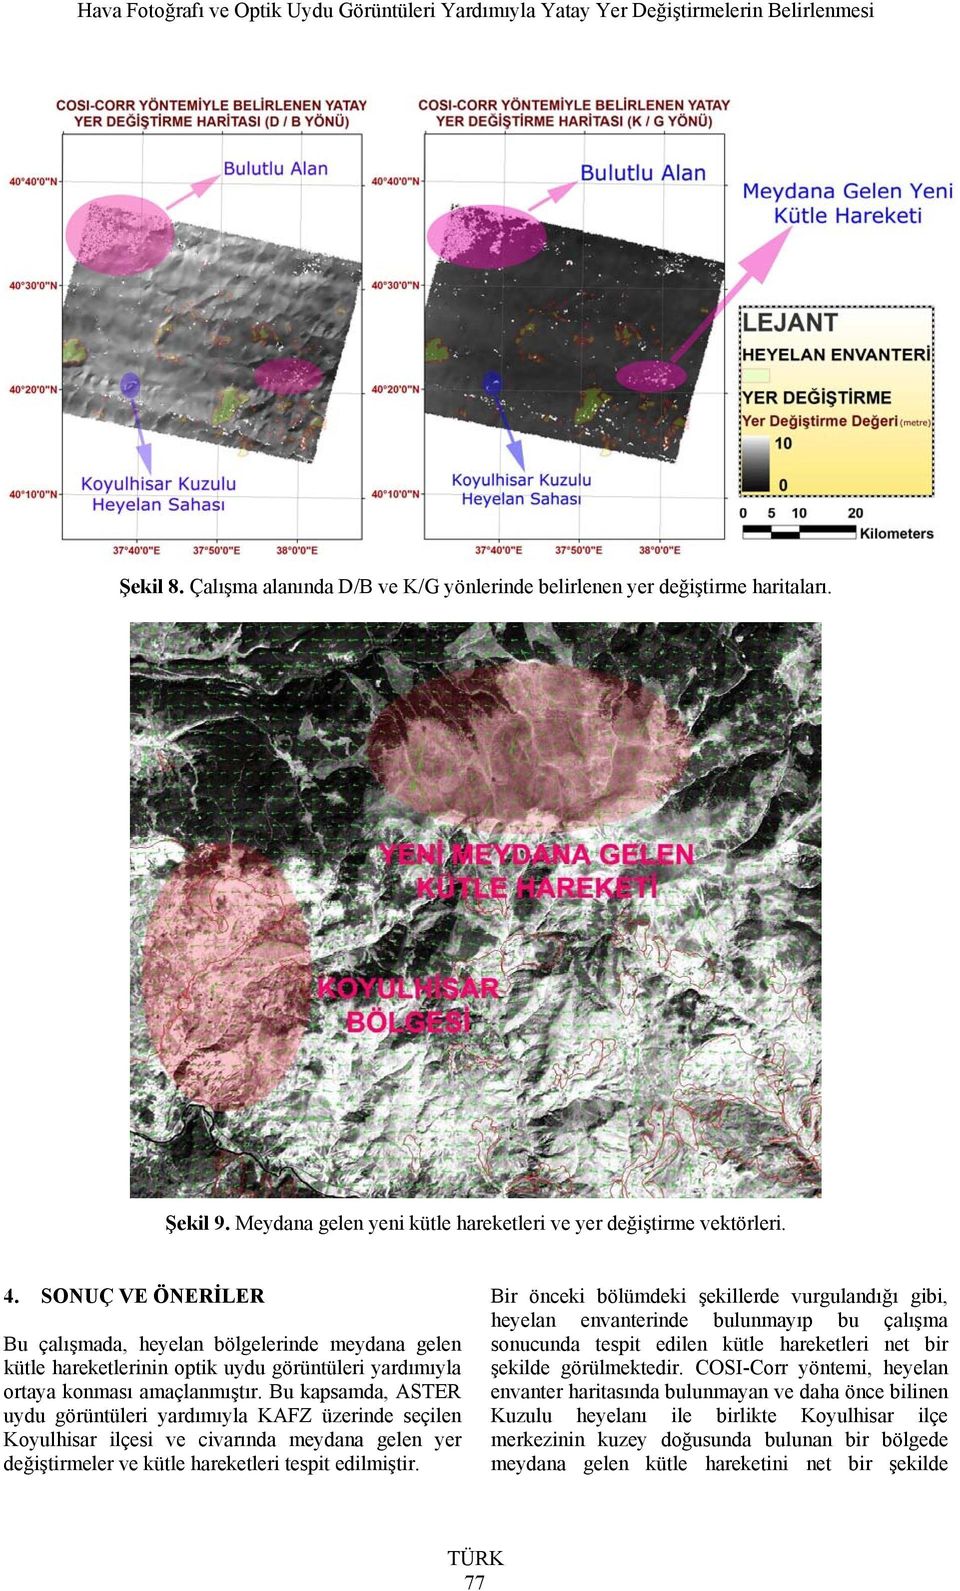 Bu kapsamda, ASTER uydu görüntüleri yardımıyla KAFZ üzerinde seçilen Koyulhisar ilçesi ve civarında meydana gelen yer değiştirmeler ve kütle hareketleri tespit edilmiştir.